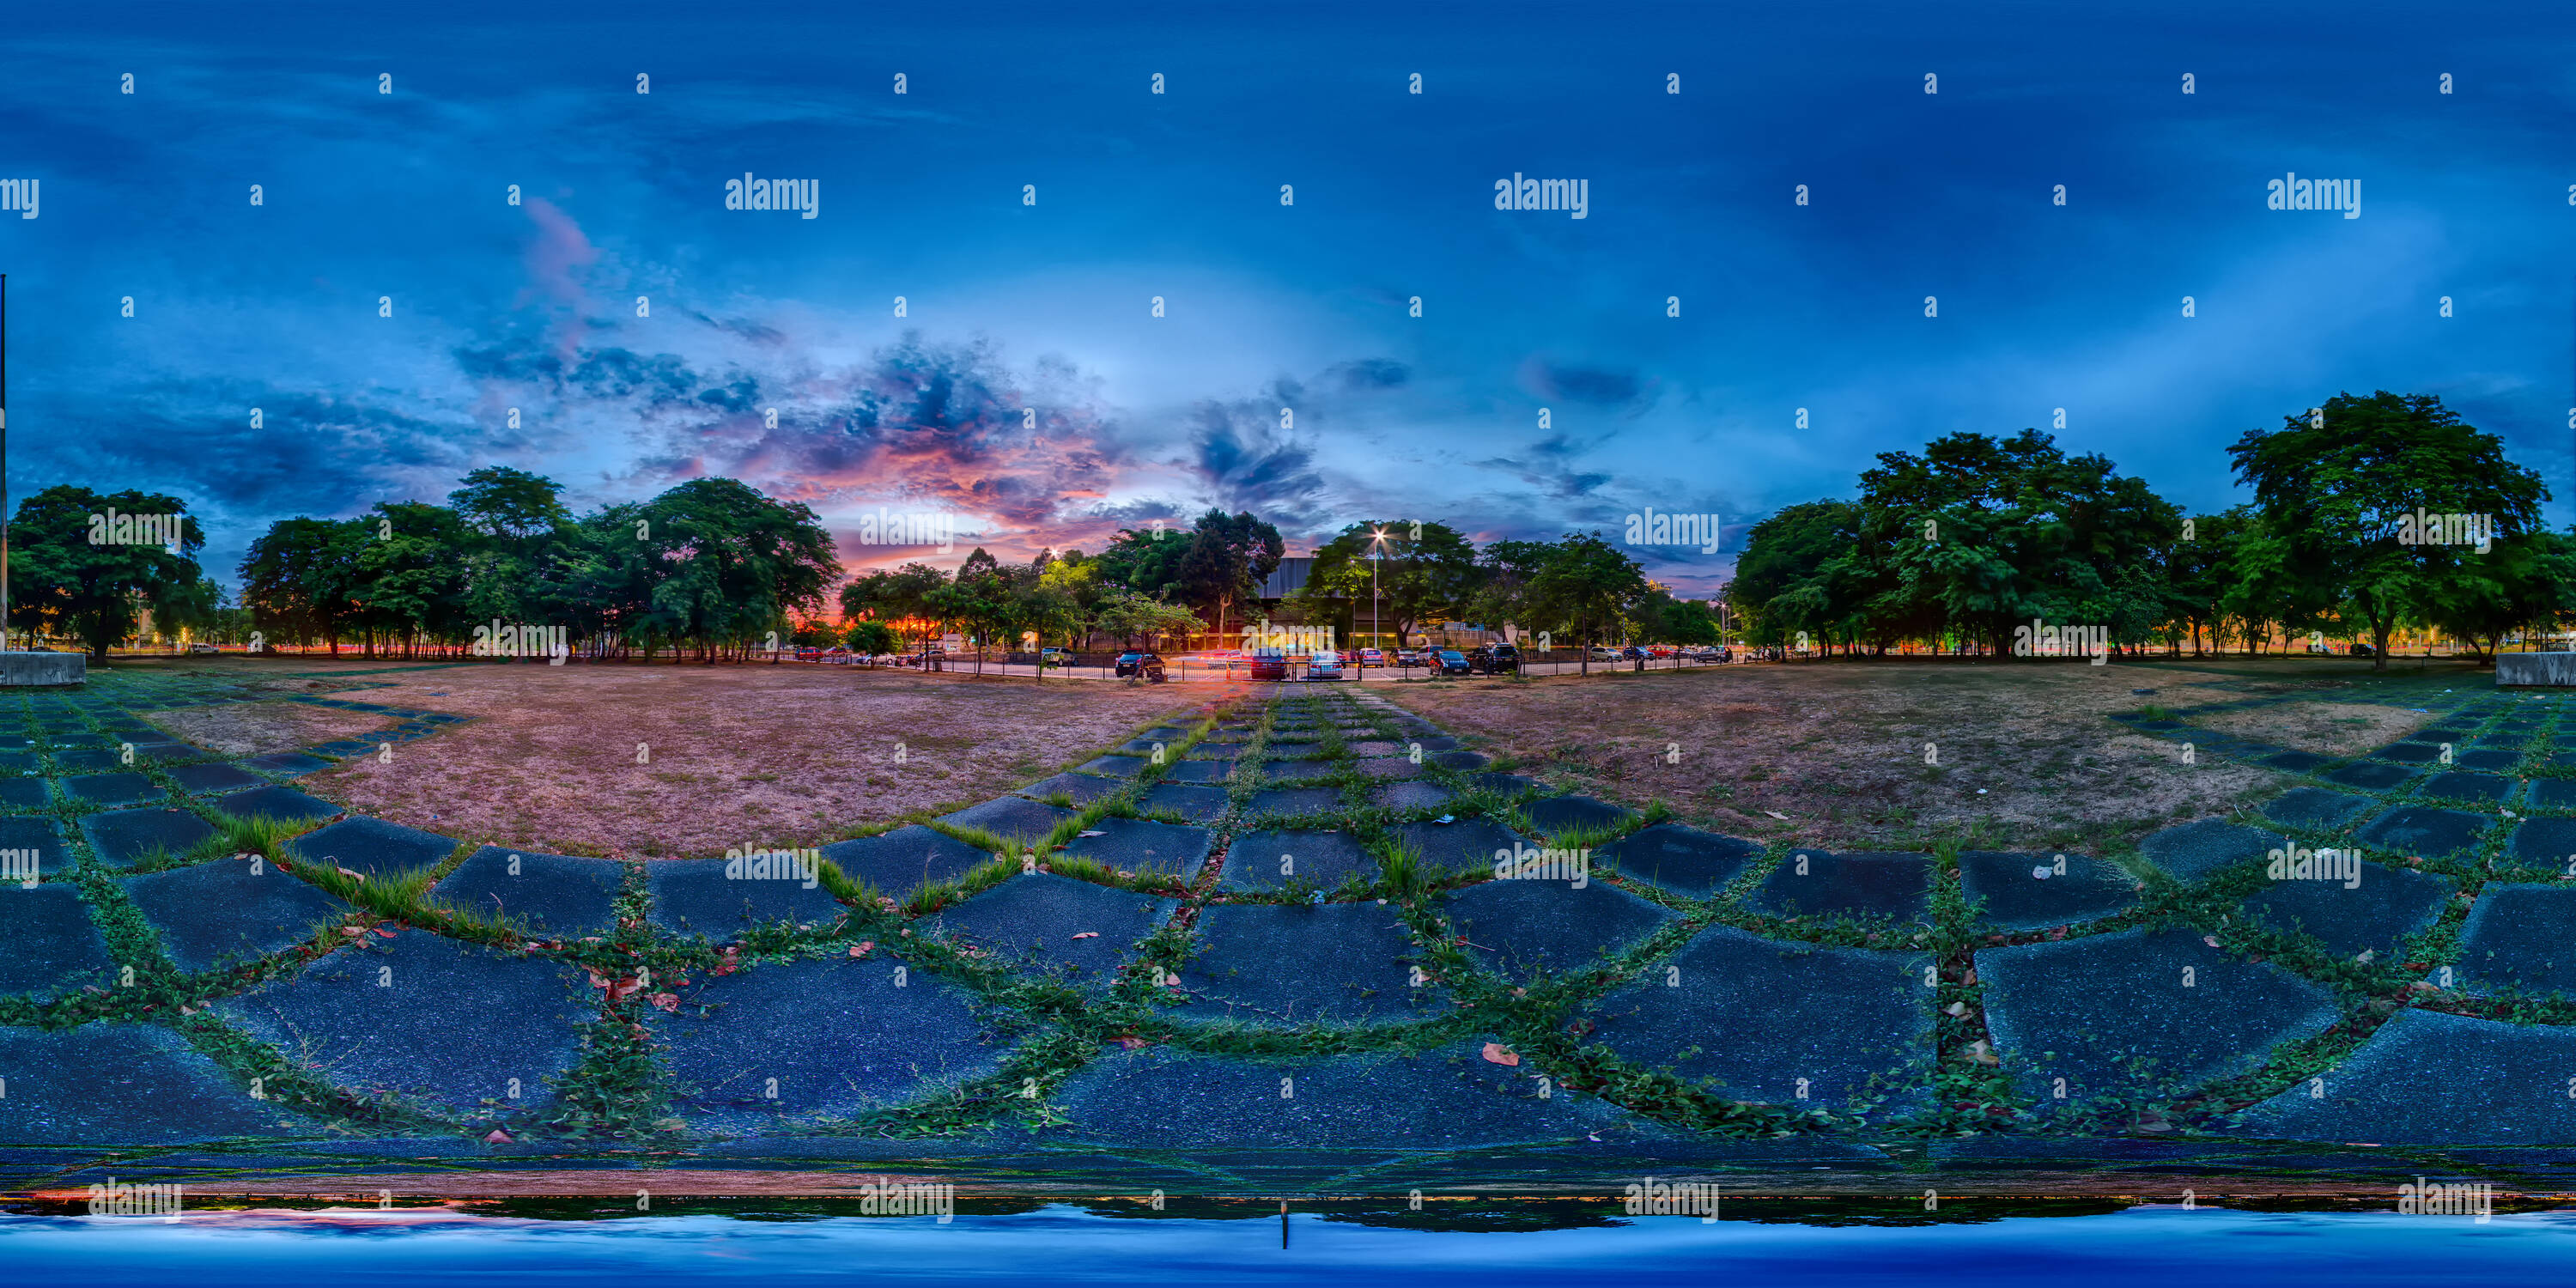 Vue panoramique à 360° de Folk Arts Plaza